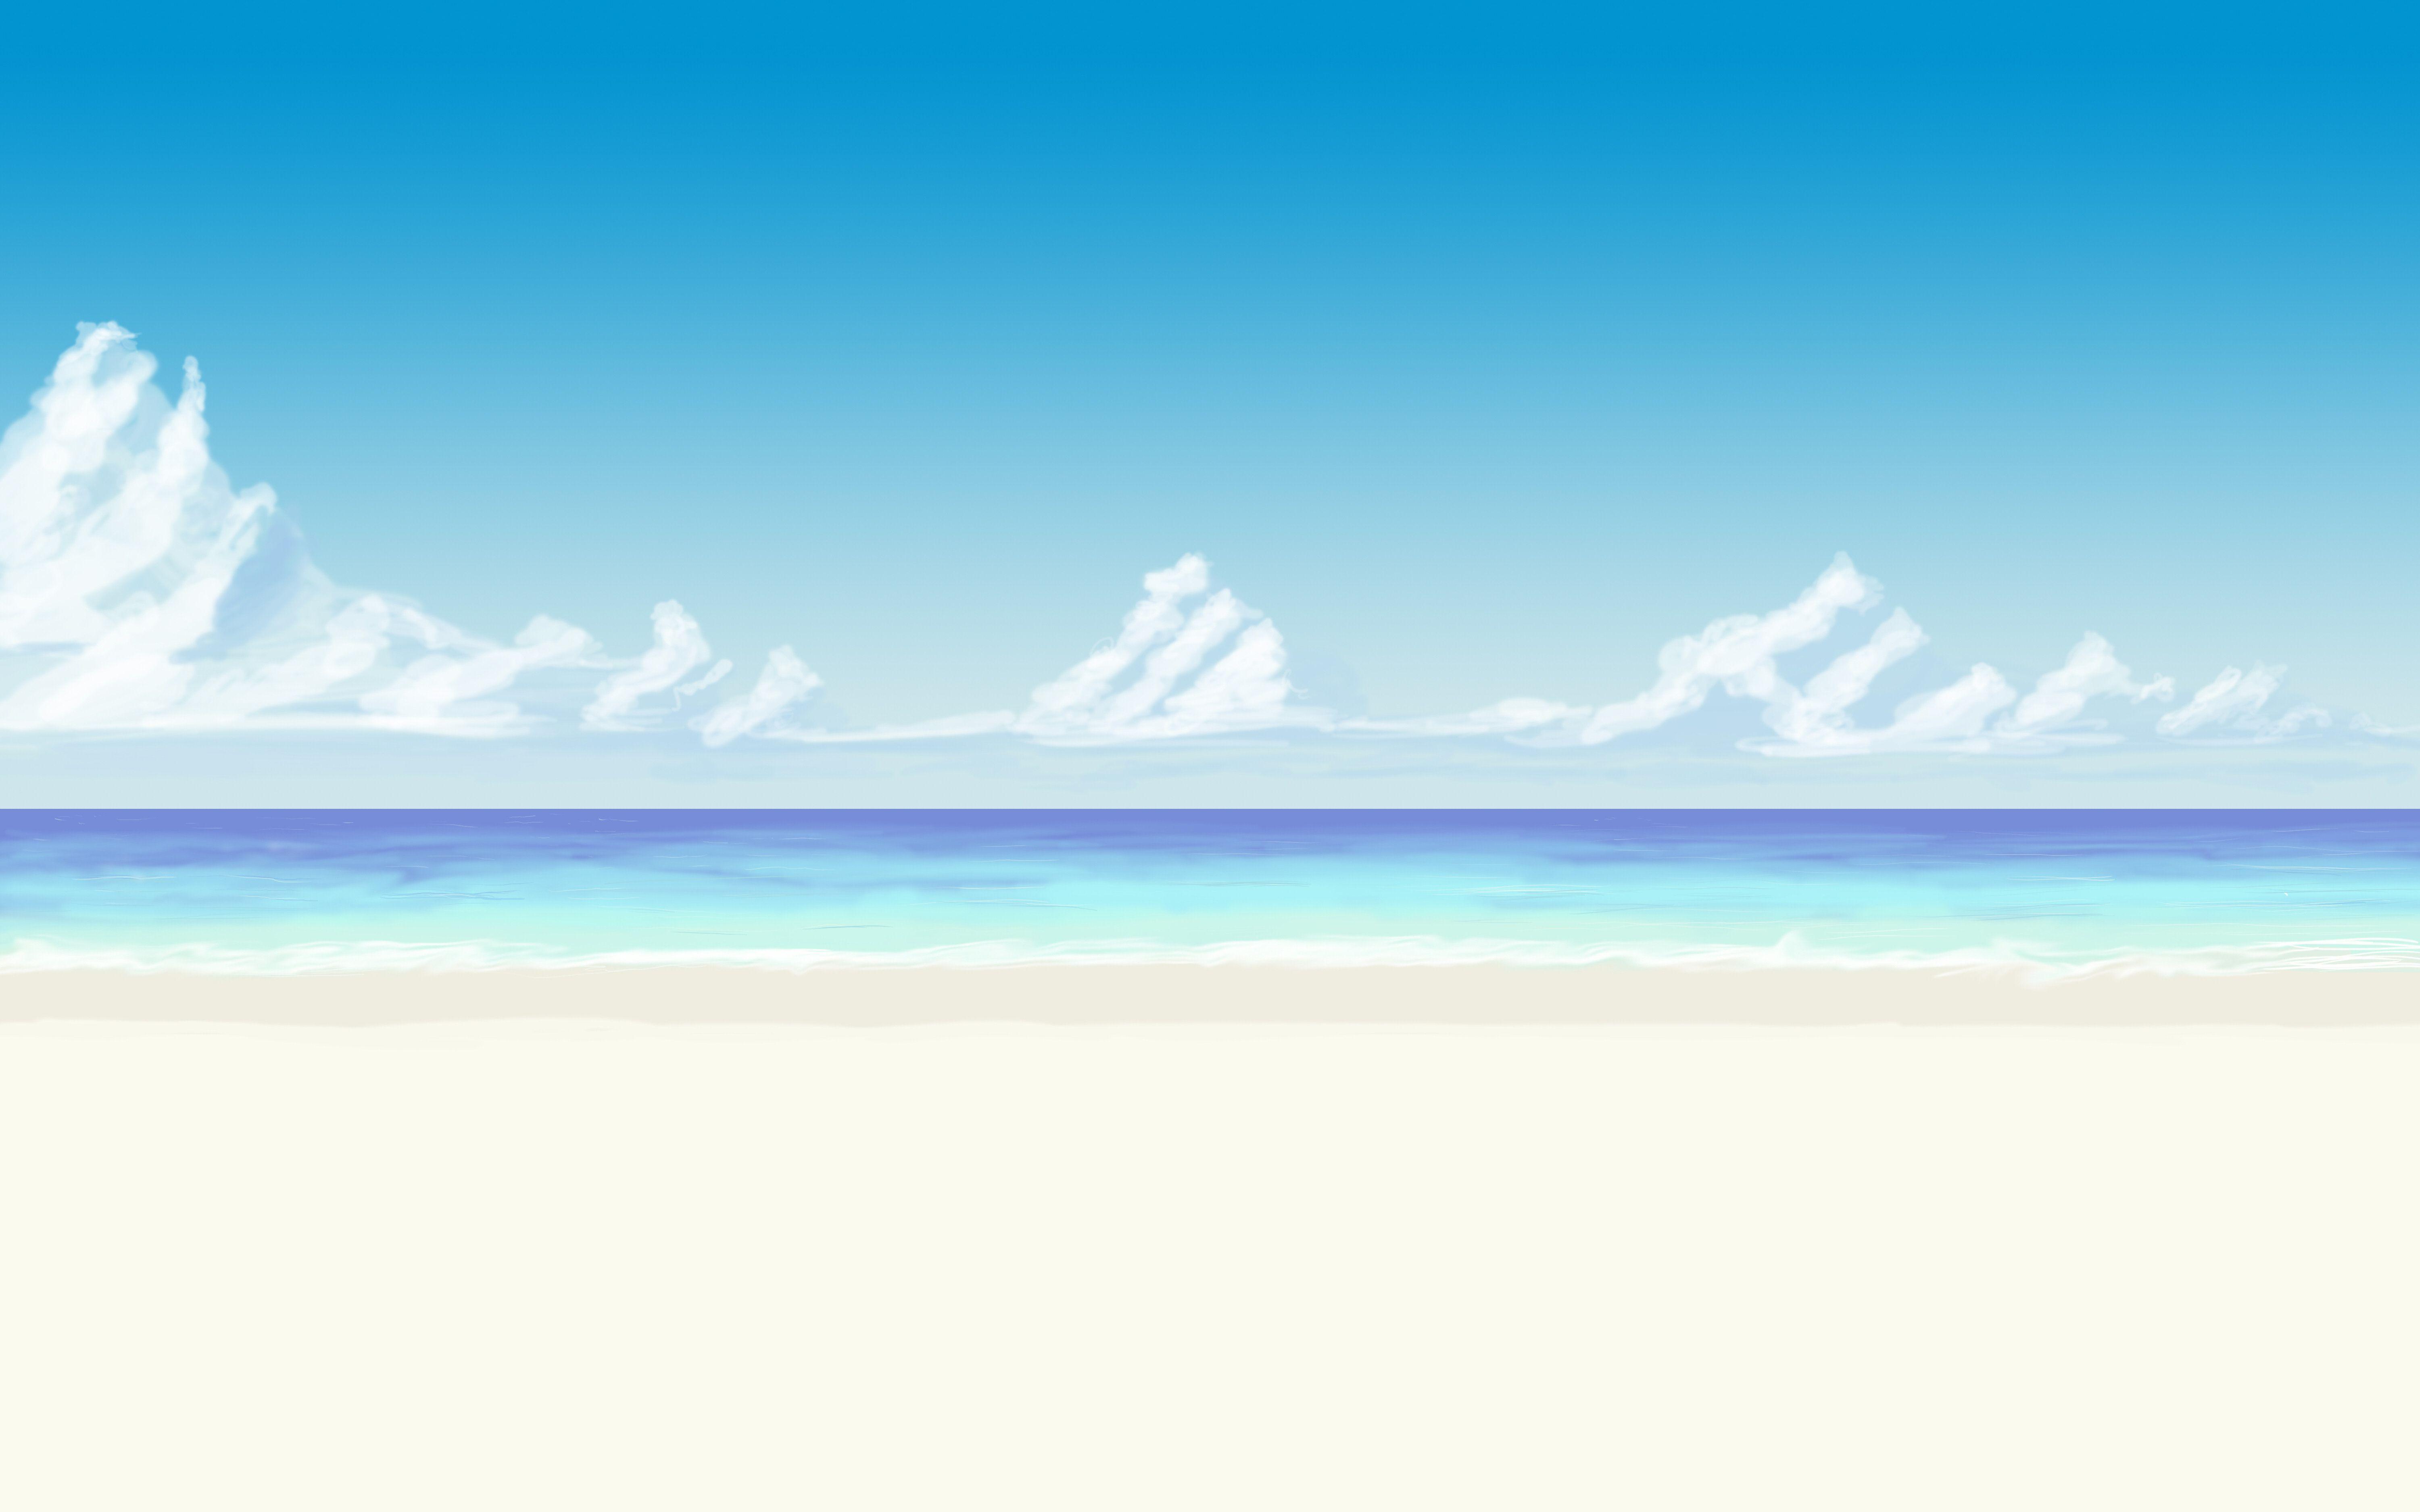 Bạn đang tìm kiếm những hình nền anime bãi biển miễn phí cho mùa hè này? Chúng tôi có thể giúp bạn! Những hình nền anime bãi biển miễn phí với thiết kế đẹp mắt, sắc nét và sống động sẽ mang đến cho bạn cảm giác thật tươi mới và thoải mái. Hãy nhấp chuột để tải ngay hình nền anime bãi biển miễn phí của chúng tôi.